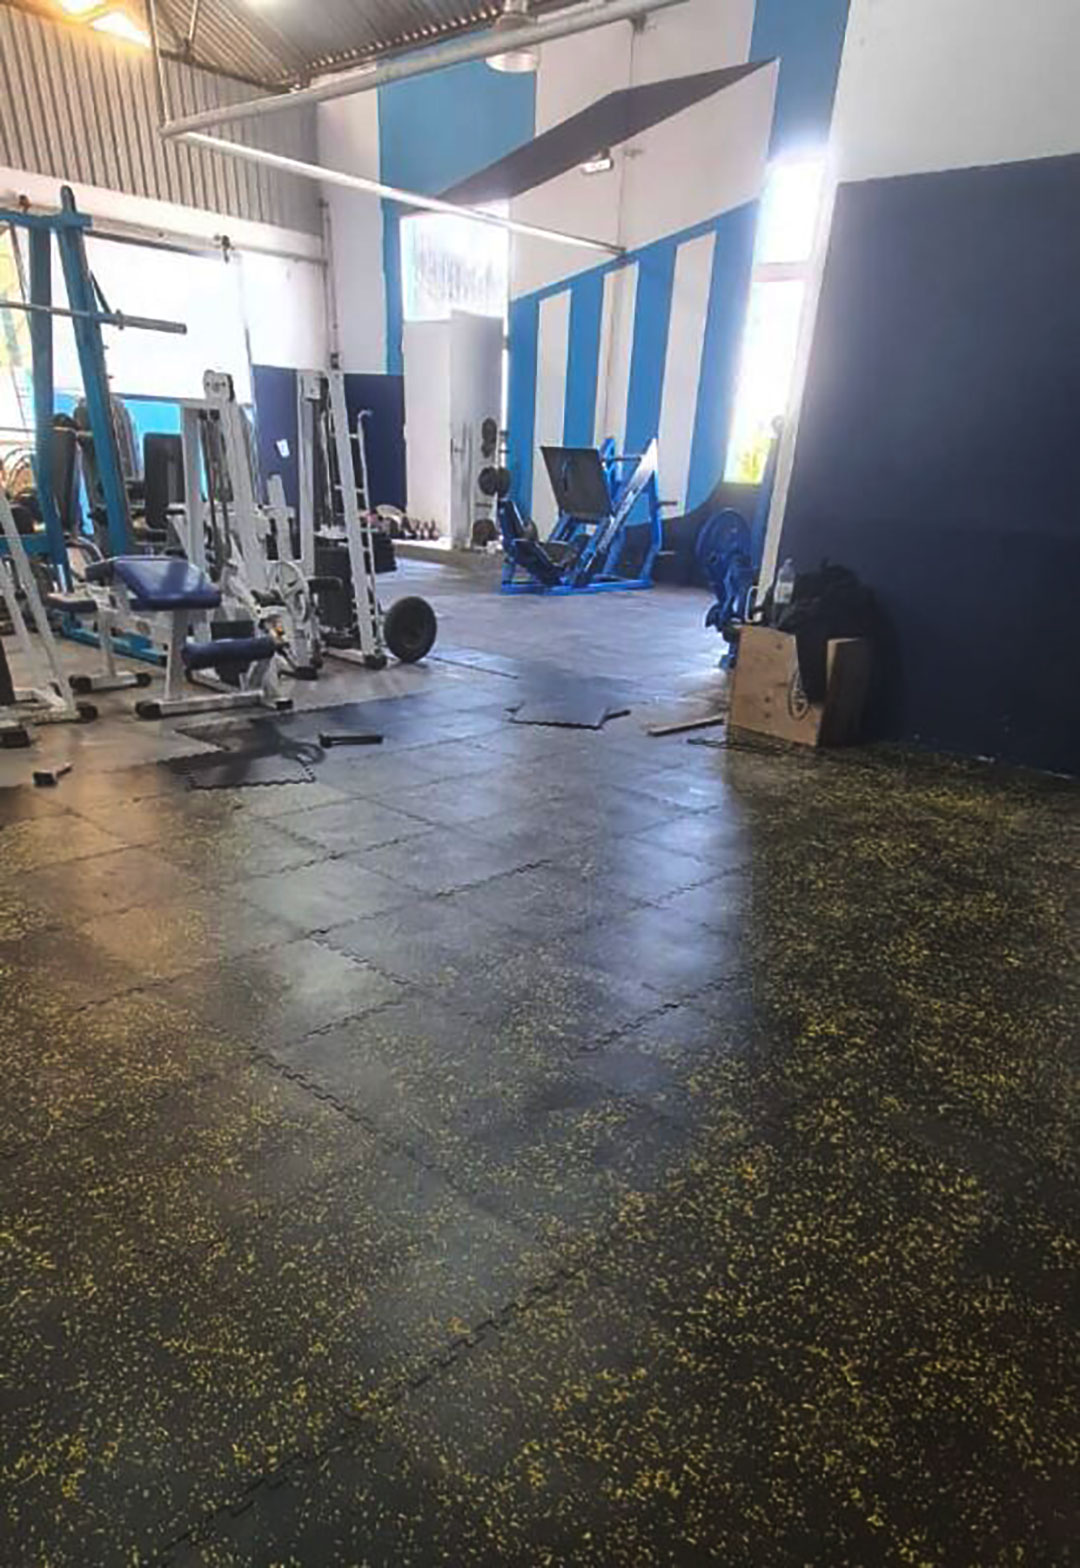 Beginilah tampilan gym setelah penempatan lantai yang disumbangkan oleh Chiquito (Foto: Racing de Alma)